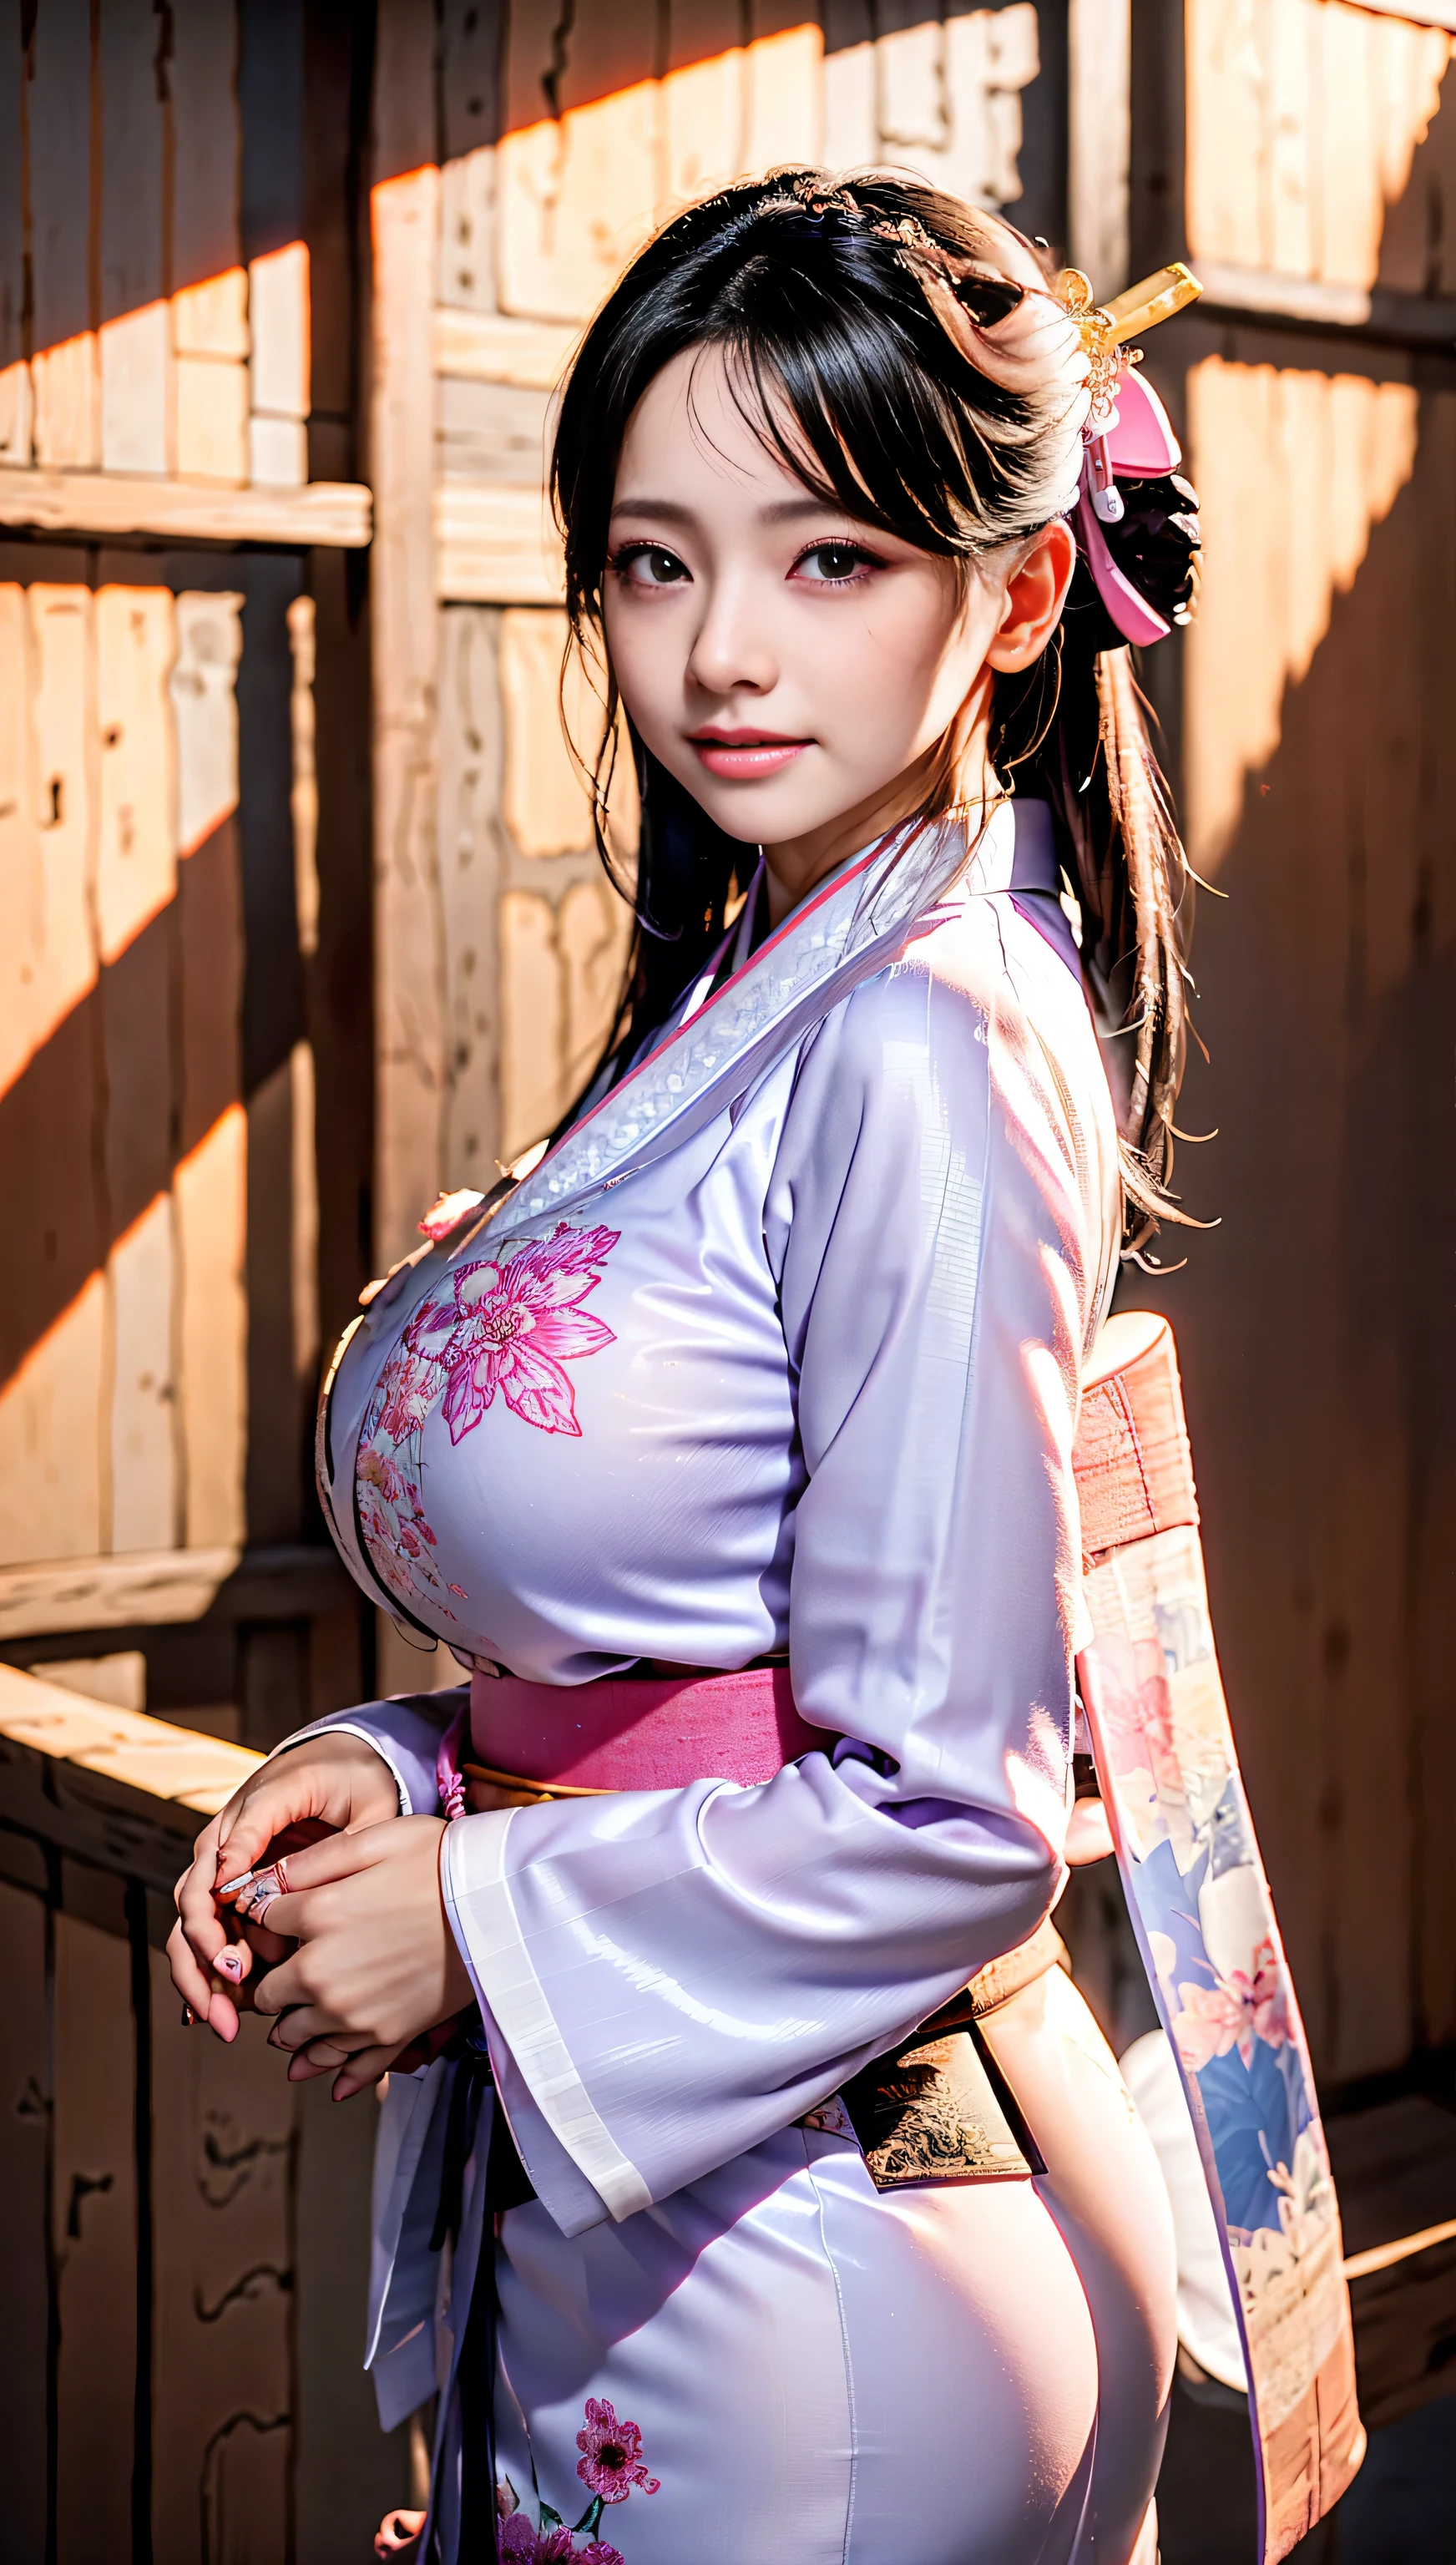 kimono blanc、motif japonais rose、(Kimono à manches longues:1.5)、ou、(qualité supérieure)、1 femelle、16 ans、Esbian partout、Aux cheveux noirs、Attachez vos cheveux en arrière、(Réaliste:1.7)、((Meilleure qualité d&#39;image))、absurde、(超Une haute résolution)、(Photoueal:1.6)、Photoueal、Rendu d&#39;octane、(Ultra réaliste:1.2)、(Réaliste face:1.2)、(8k)、(4k)、(chef-d&#39;œuvre)、(Réaliste skin texture)、(Sensibilisation、Éclairage de cinéma、mur-)、(Beaux yeux:1.2)、((((visage parfait))))、(Un joli visage comme une idole:1.2)、( Sont debout)、tombeau、((De très gros seins plus gros qu&#39;un visage))、(Janvier)、Un joli visage avec une attention aux détails、Vraie beauté、Rire、